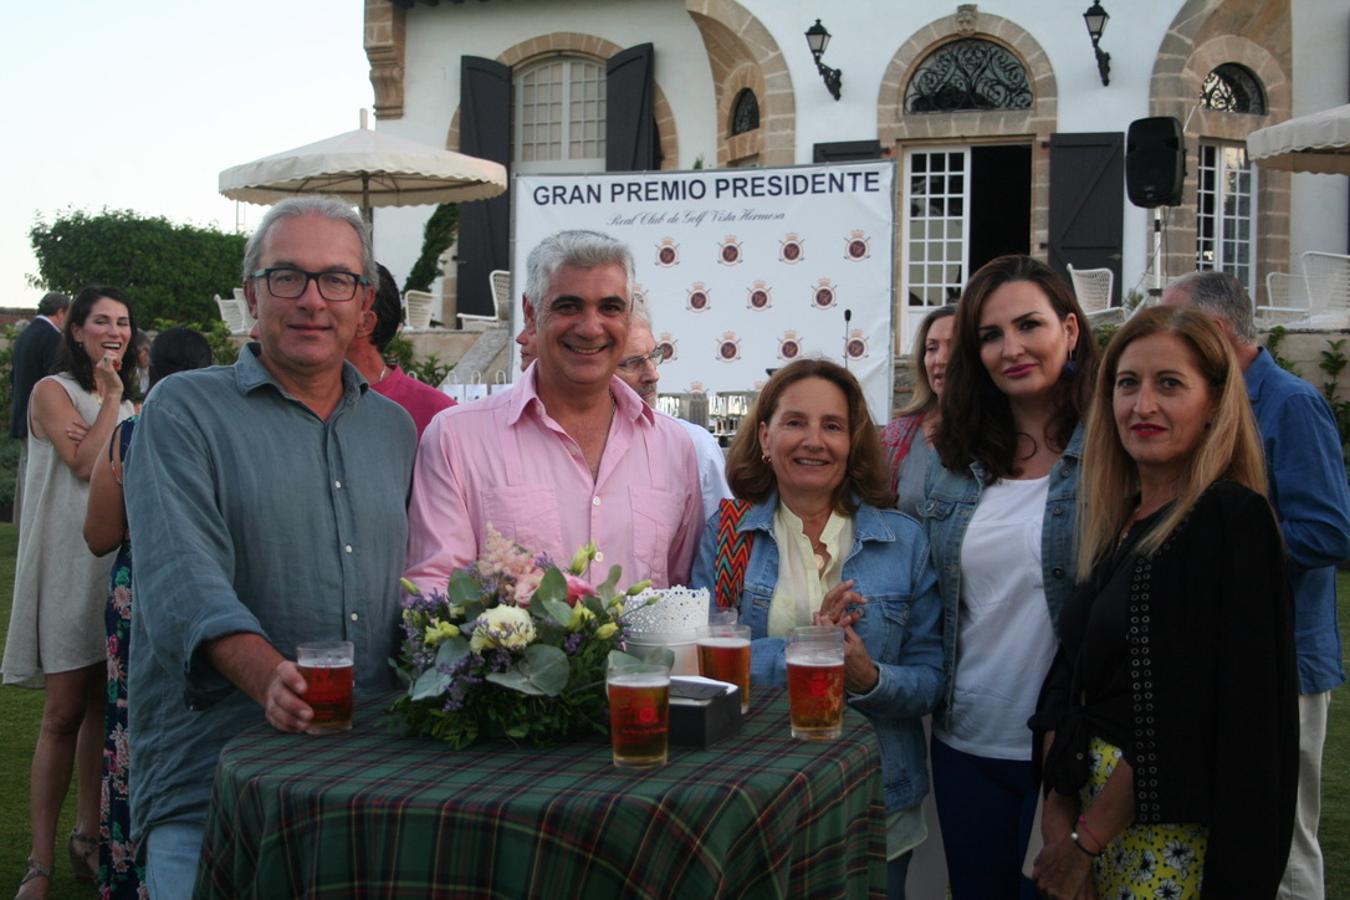 Mentidero: Gran Premio Presidente de Golf y Croquet en el Real Club de Golf de Vistahermosa